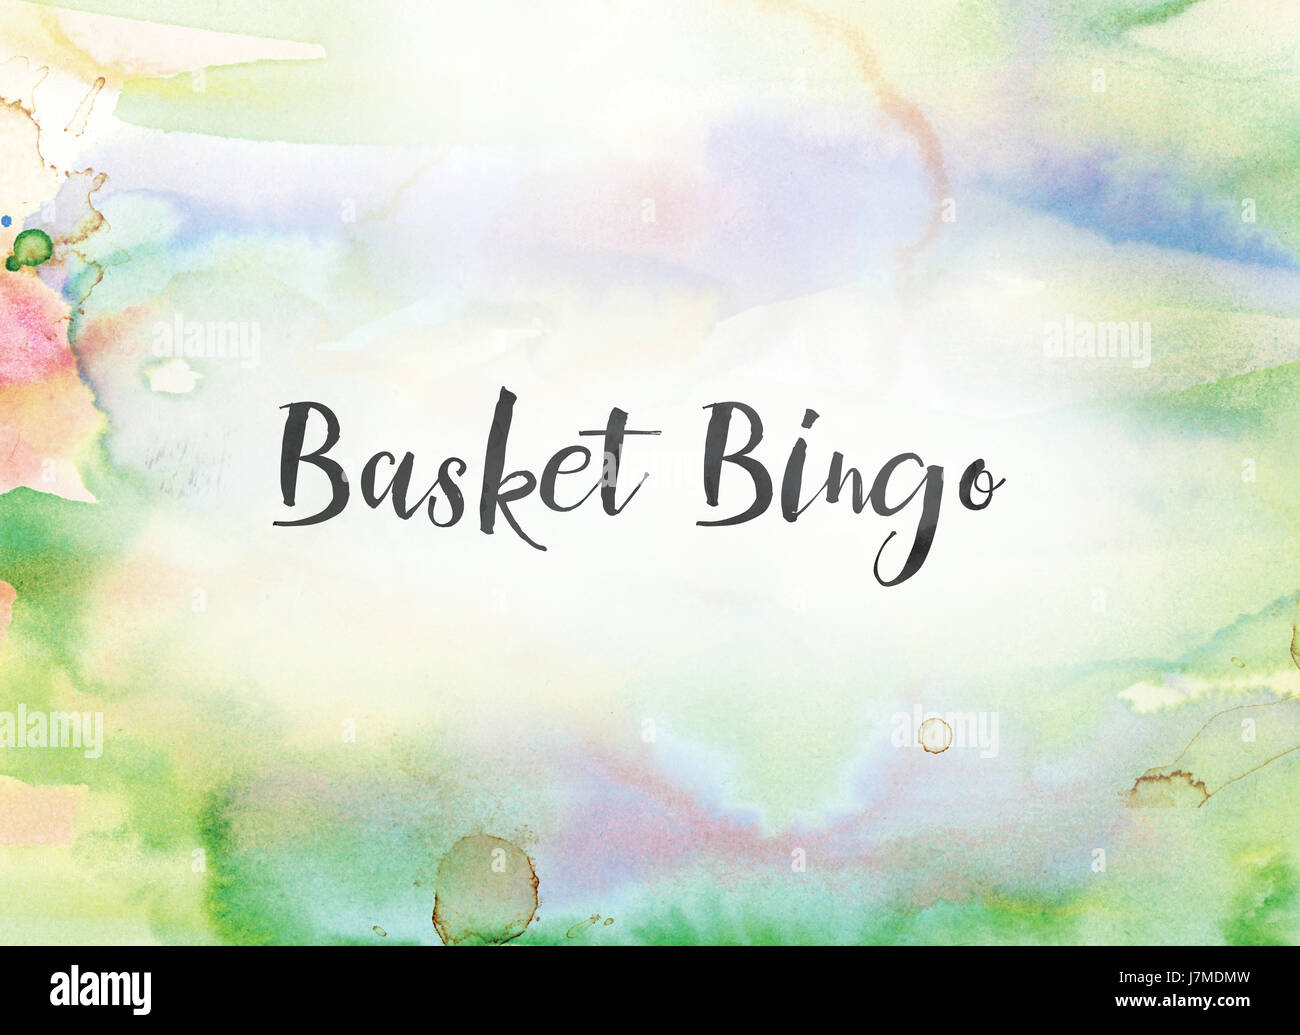 Die Wörter Korb Bingo Konzept und das Thema auf einem bunt bemalten  Aquarell Hintergrund in schwarzer Tinte geschrieben Stockfotografie - Alamy